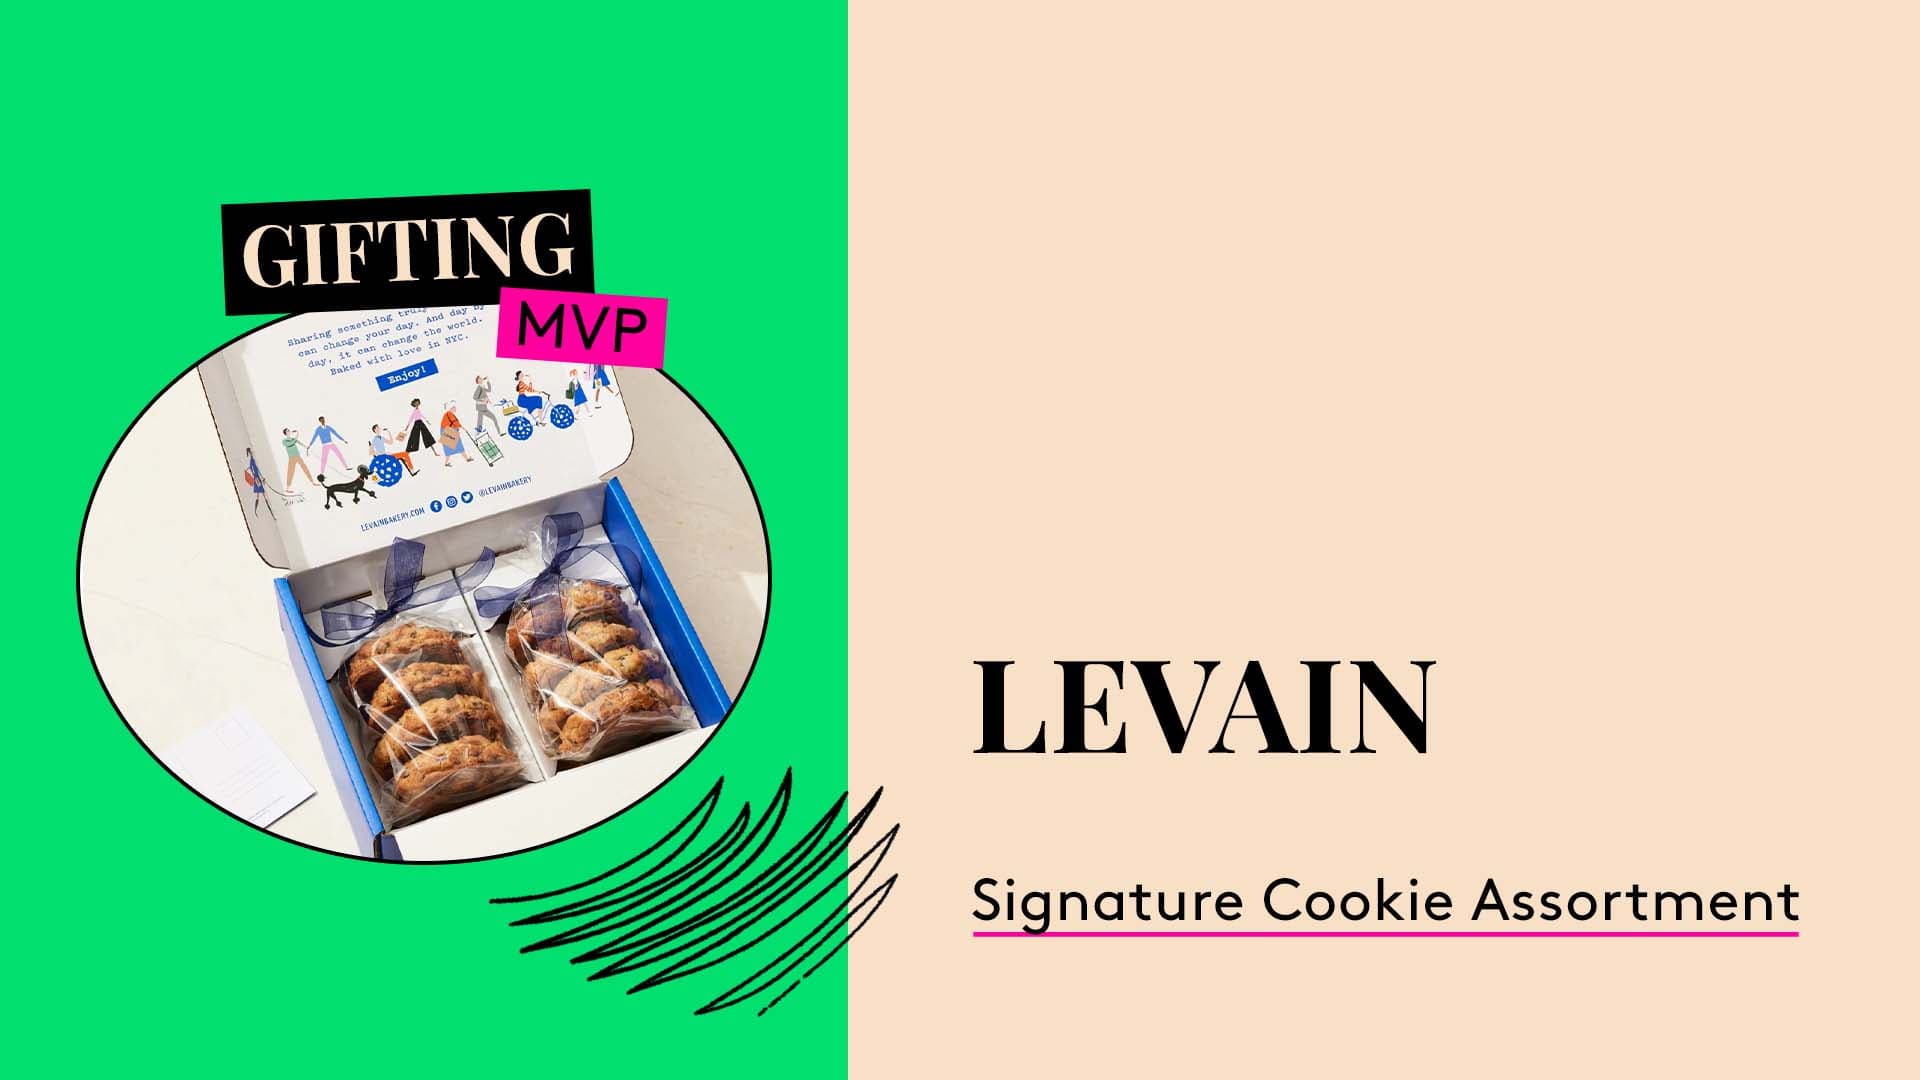 Gifting MVP.
Levain Signature Cookie Assortment.